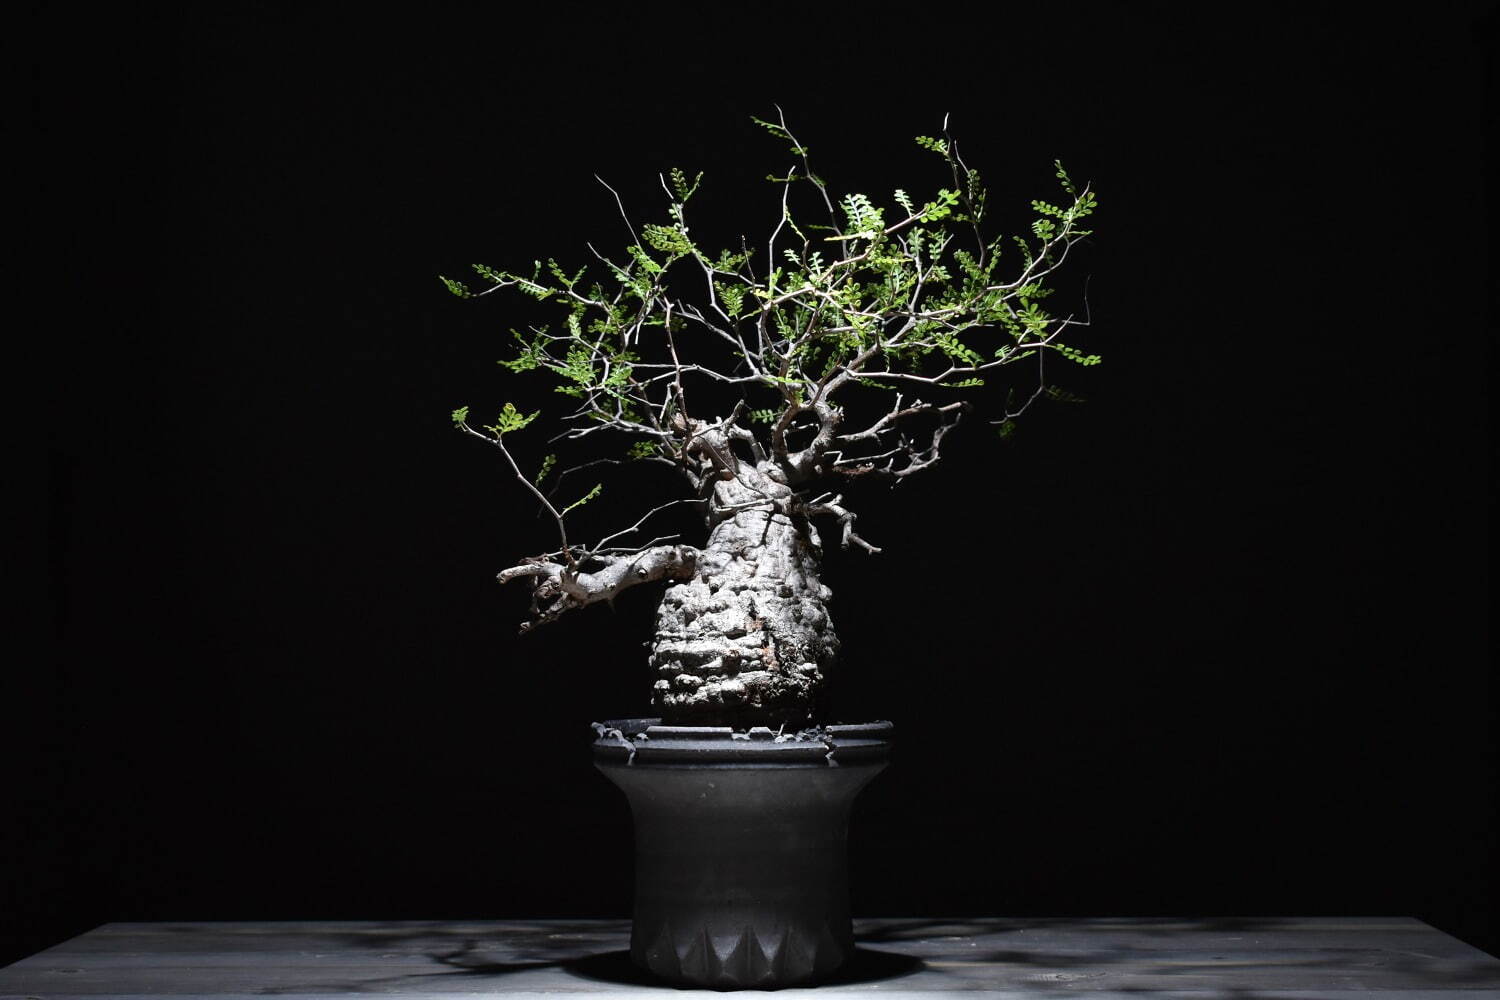 ハチラボ植木鉢×ラフラムコラボセット
オペルクリカリア パキプス 297,000円